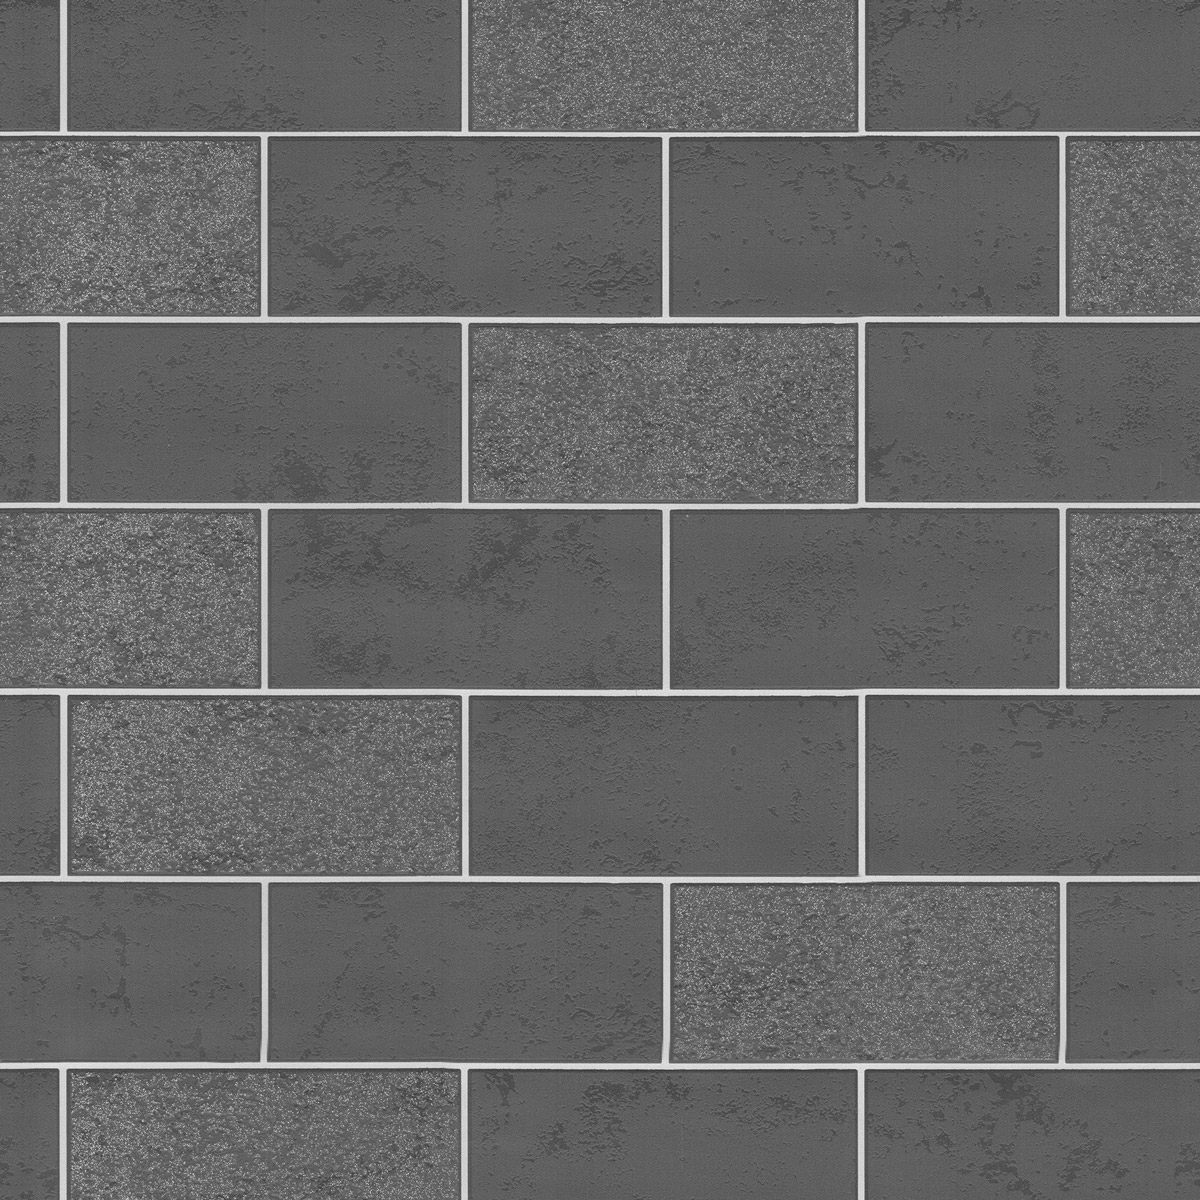 Fine Decor ceramica subway glitter tile black grey wallpaper